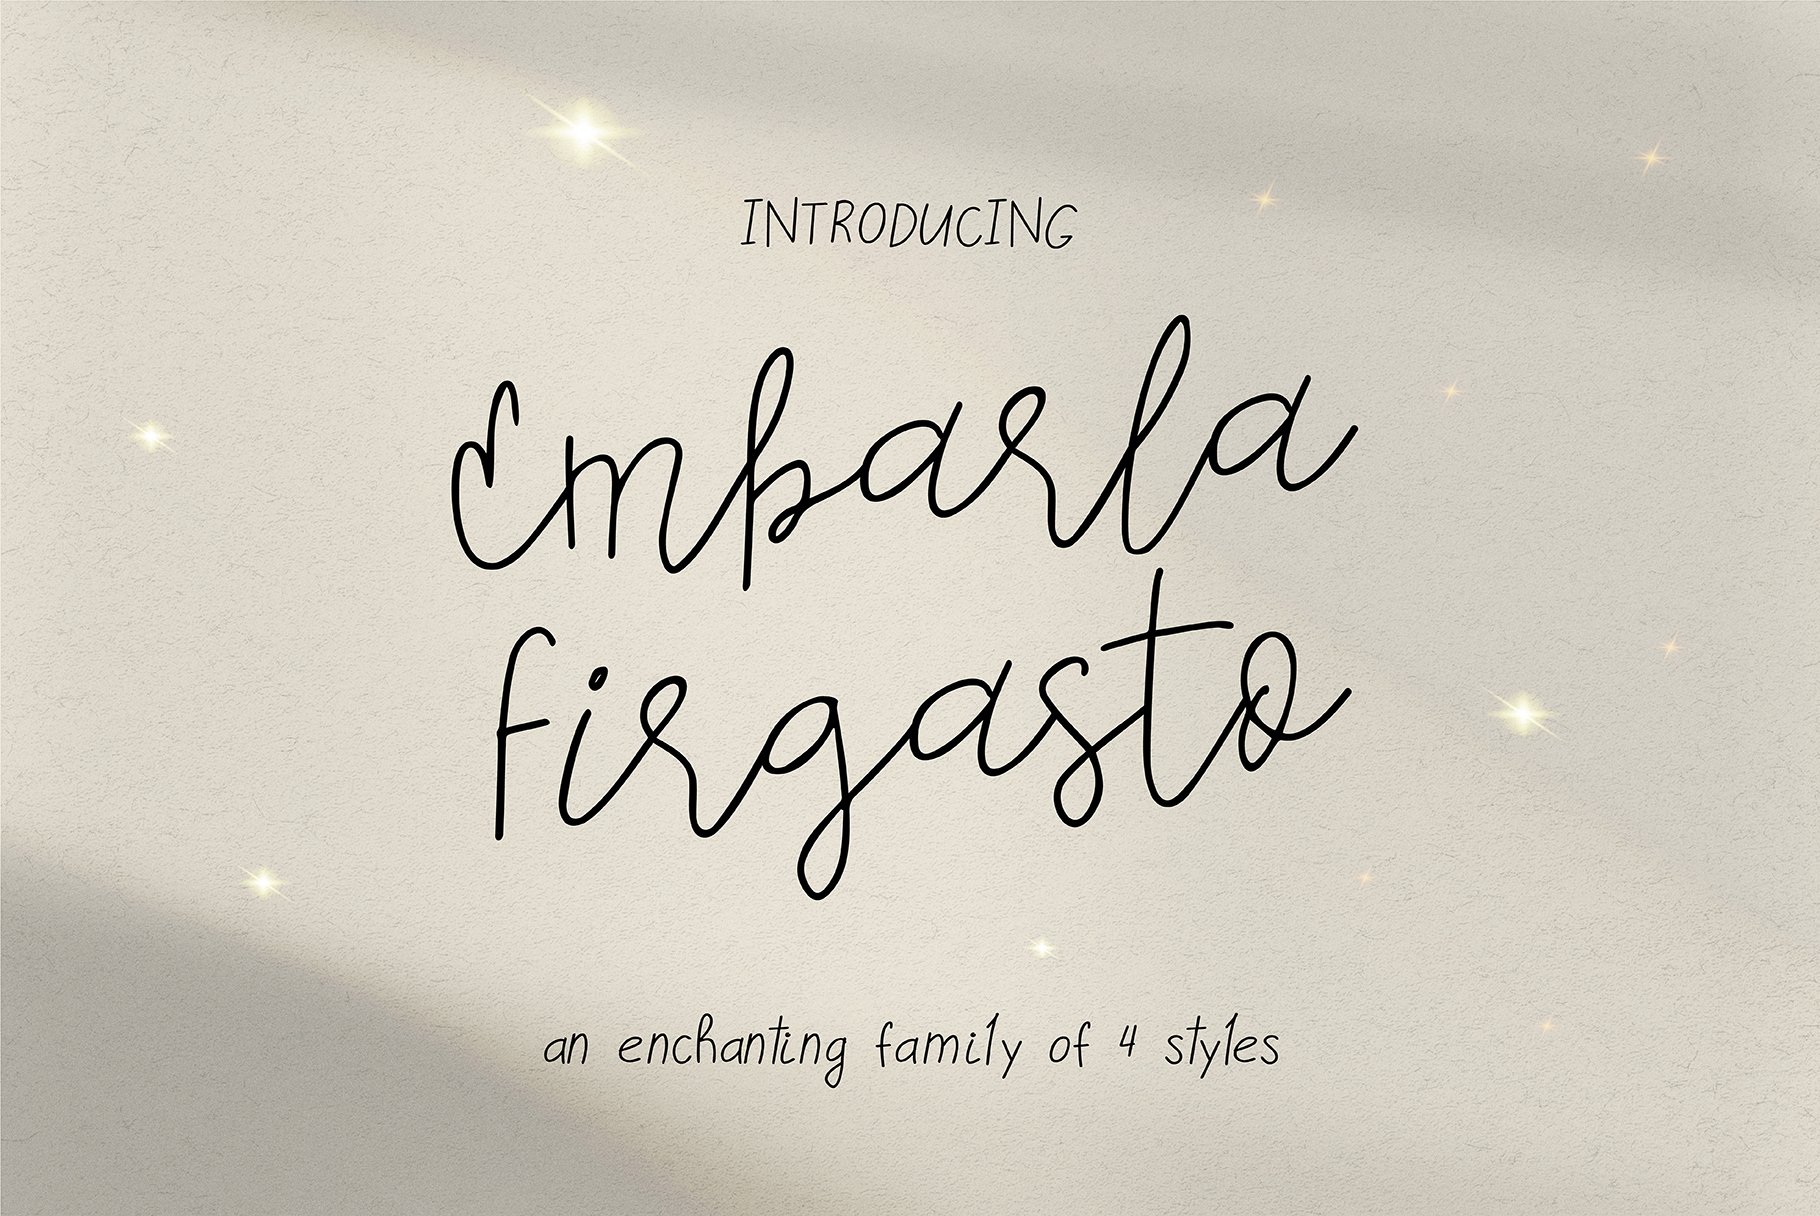 Embarla Firgasto Family 4种时尚迷人手写脚本笔记海报设计封面艺术婚礼字体 , 第1张